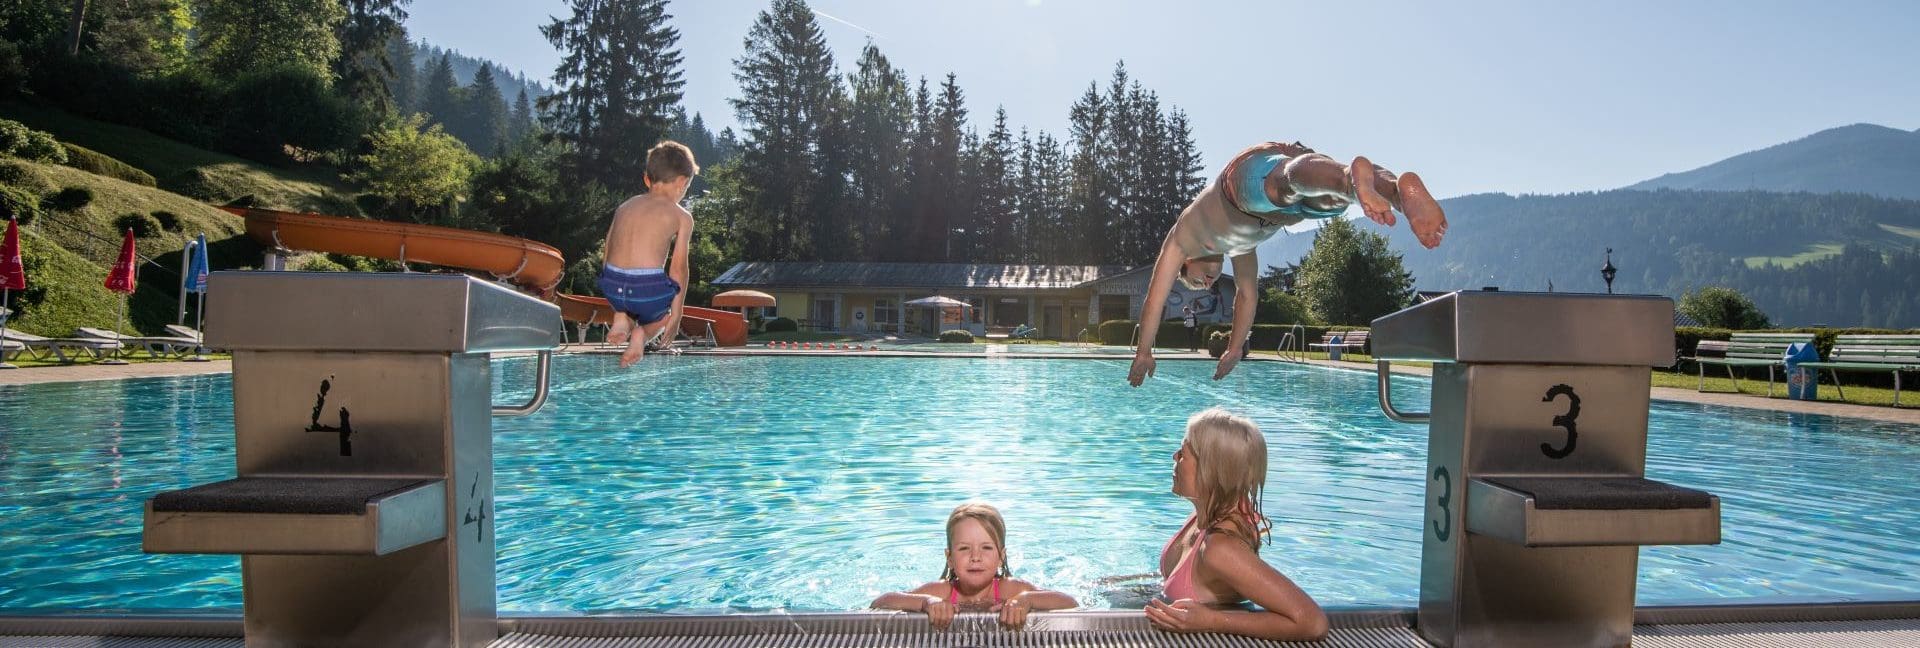 Sommerurlaub in Radstadt mit Badespass im Schwimmbad ©Tourismusverbband Radstadt / Lorenz Masser